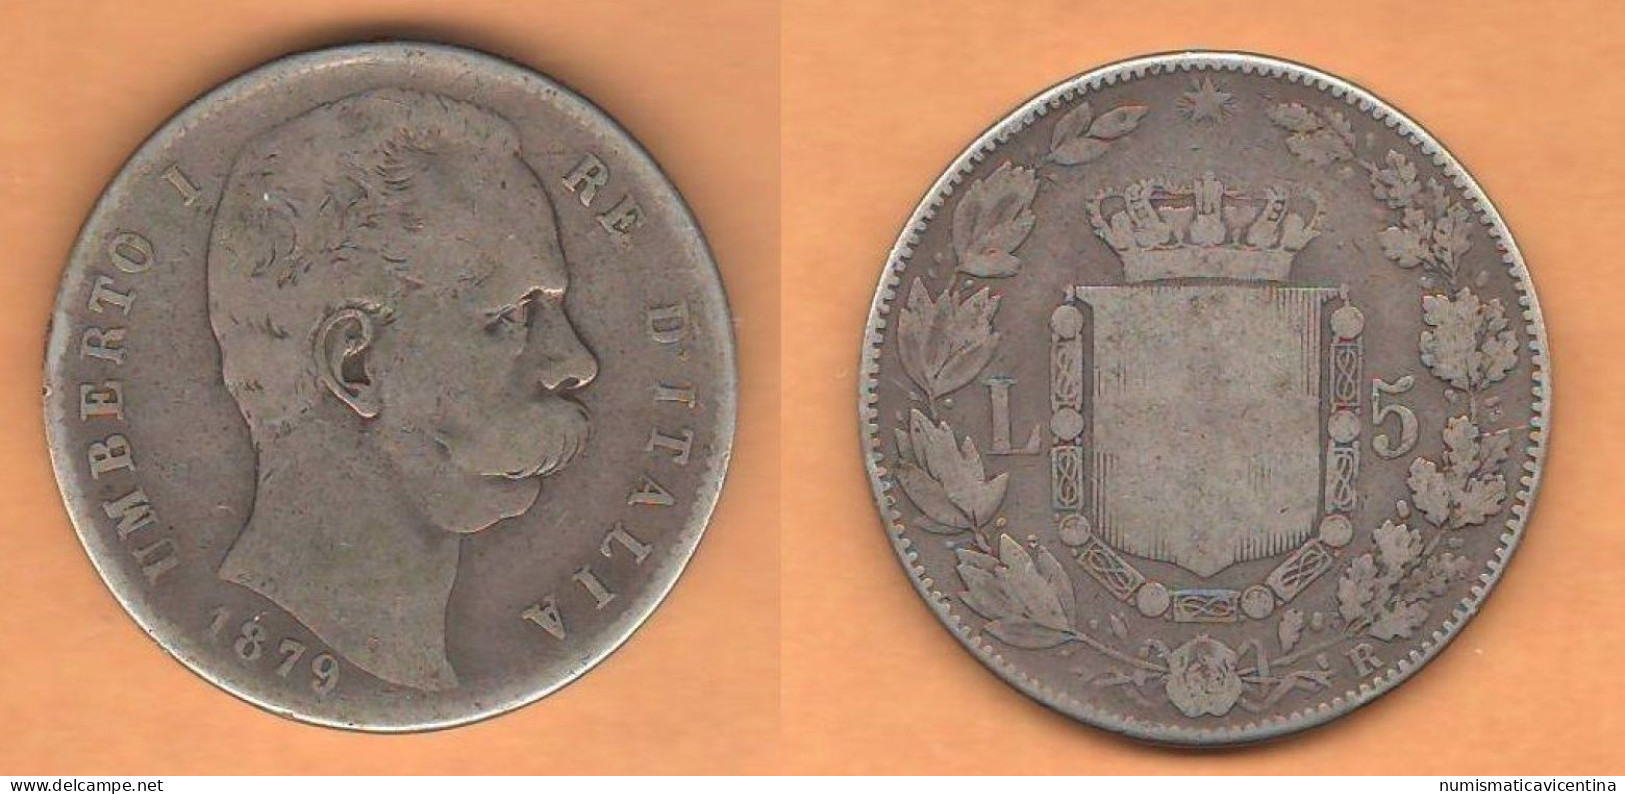 Italia 5 Lire 1879 Re Umberto I°  Italie Italy Silver Coin - 1878-1900 : Umberto I.